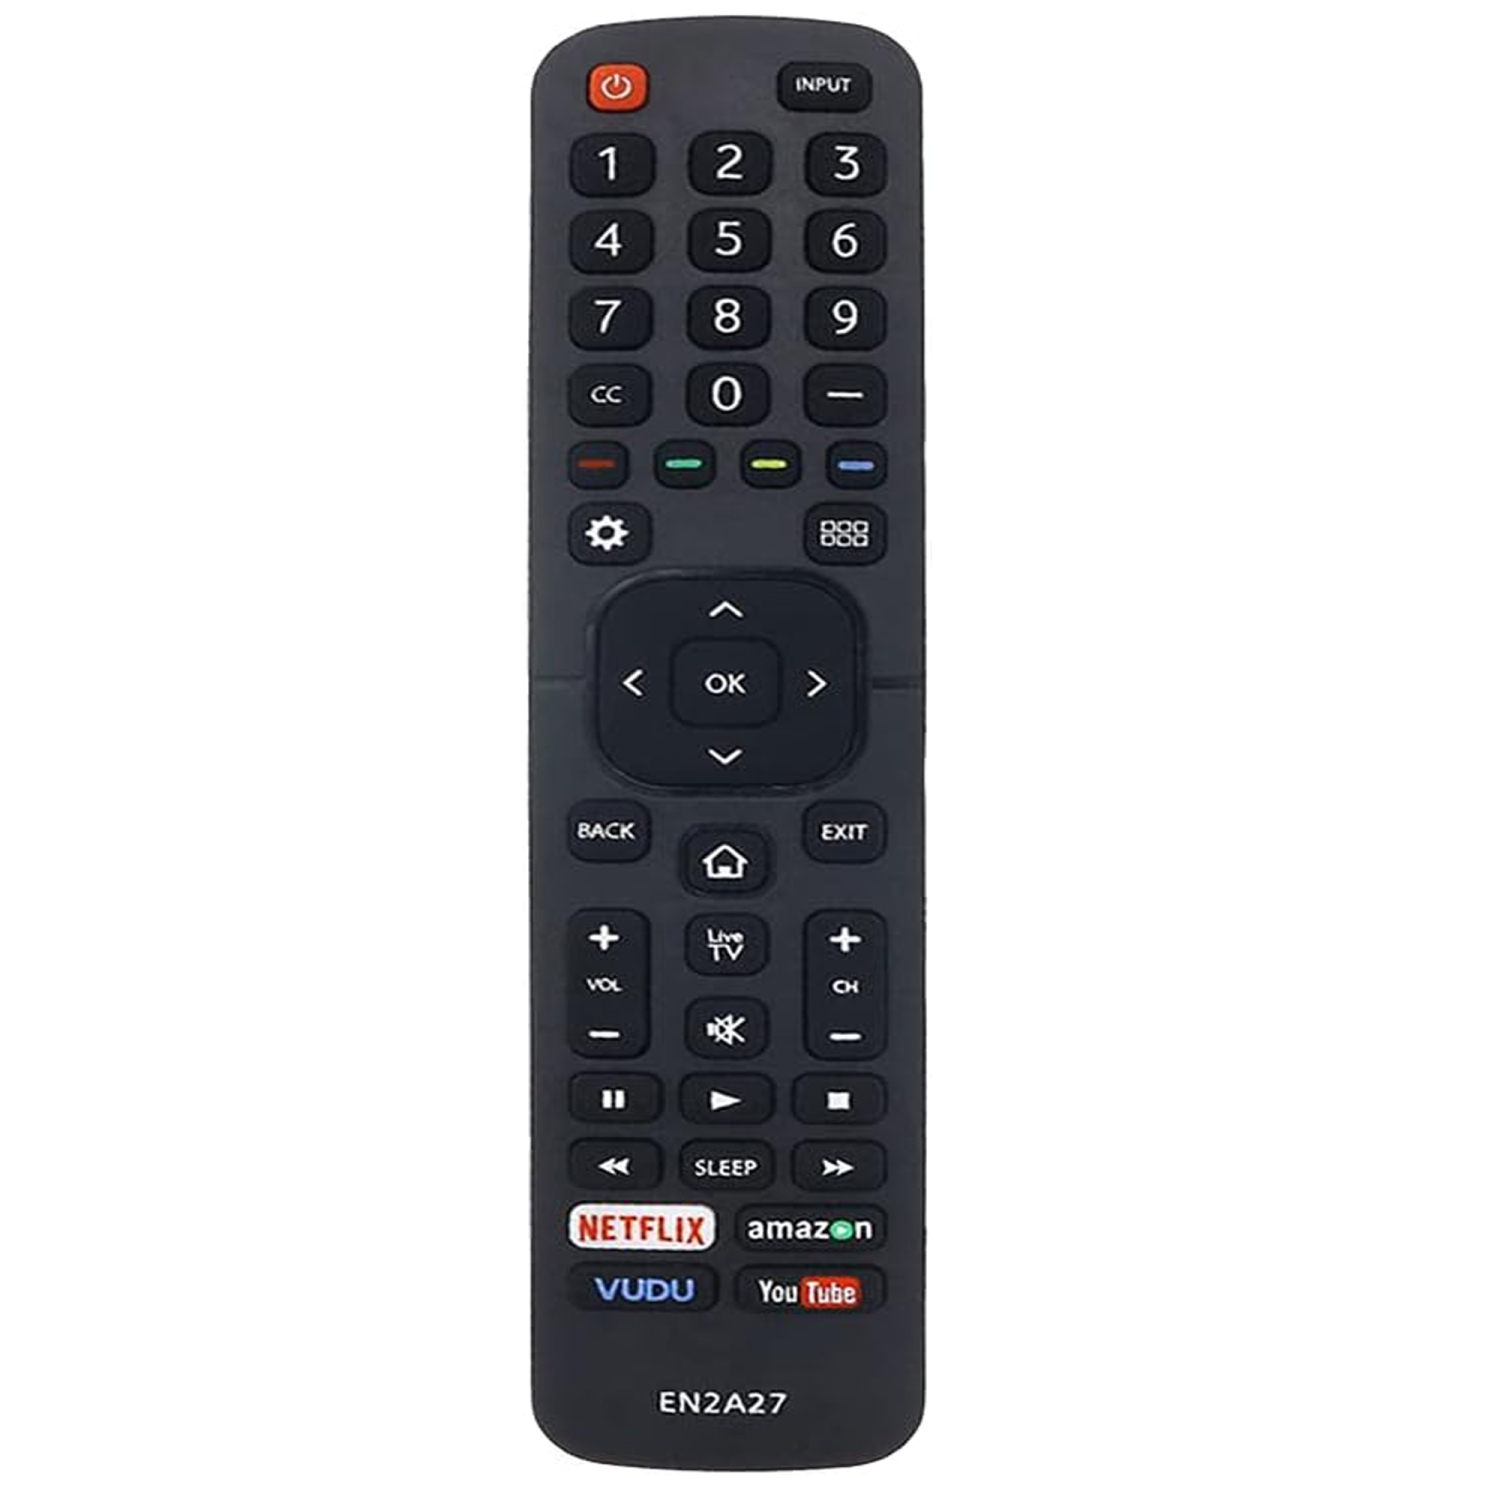 Smart TV Remote Control EN2A27 for Hisense TV, Universal Remote Control Replacement for Hisense EN2A27